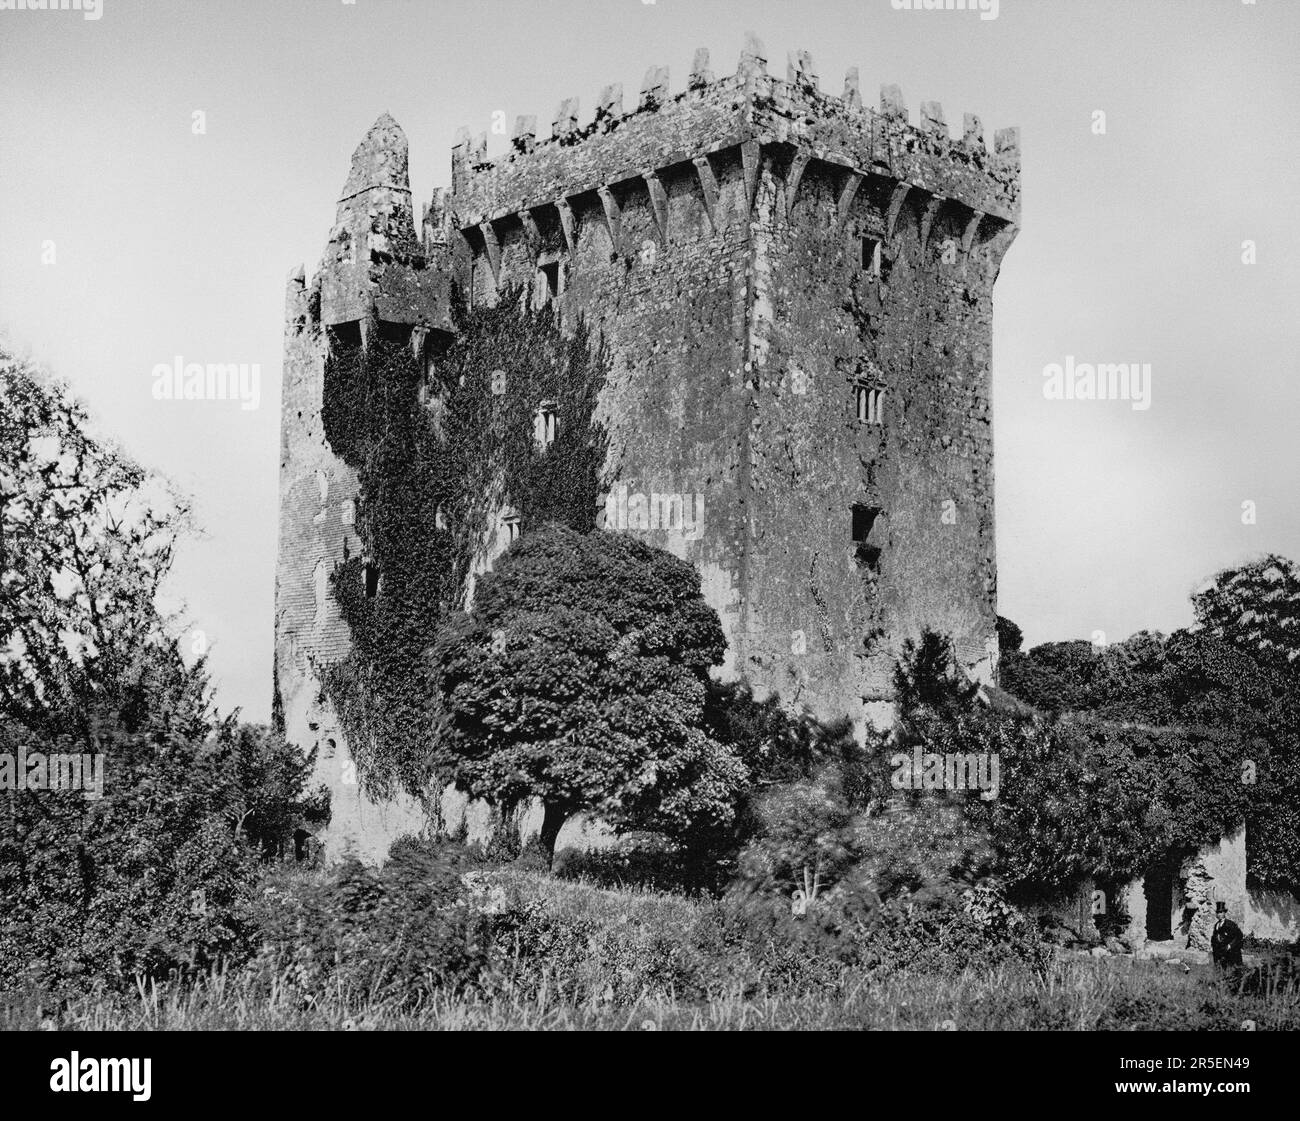 Vue de la fin du 19th siècle du château de Blarney, bastion médiéval, qui a vu de nombreuses actions militaires à Blarney, comté de Cork, Irlande. Il a été construit vers 1446 par la dynastie MacCarthy de Muskerry, une branche des Rois de Desmond. Au sommet du château se trouve la Pierre d'Éloquence, mieux connue sous le nom de Pierre de Blarney; les touristes visitant le château peuvent pendre à l'envers sur une simple goutte pour embrasser la pierre, qui est dit pour donner le cadeau de l'éloquence. Banque D'Images